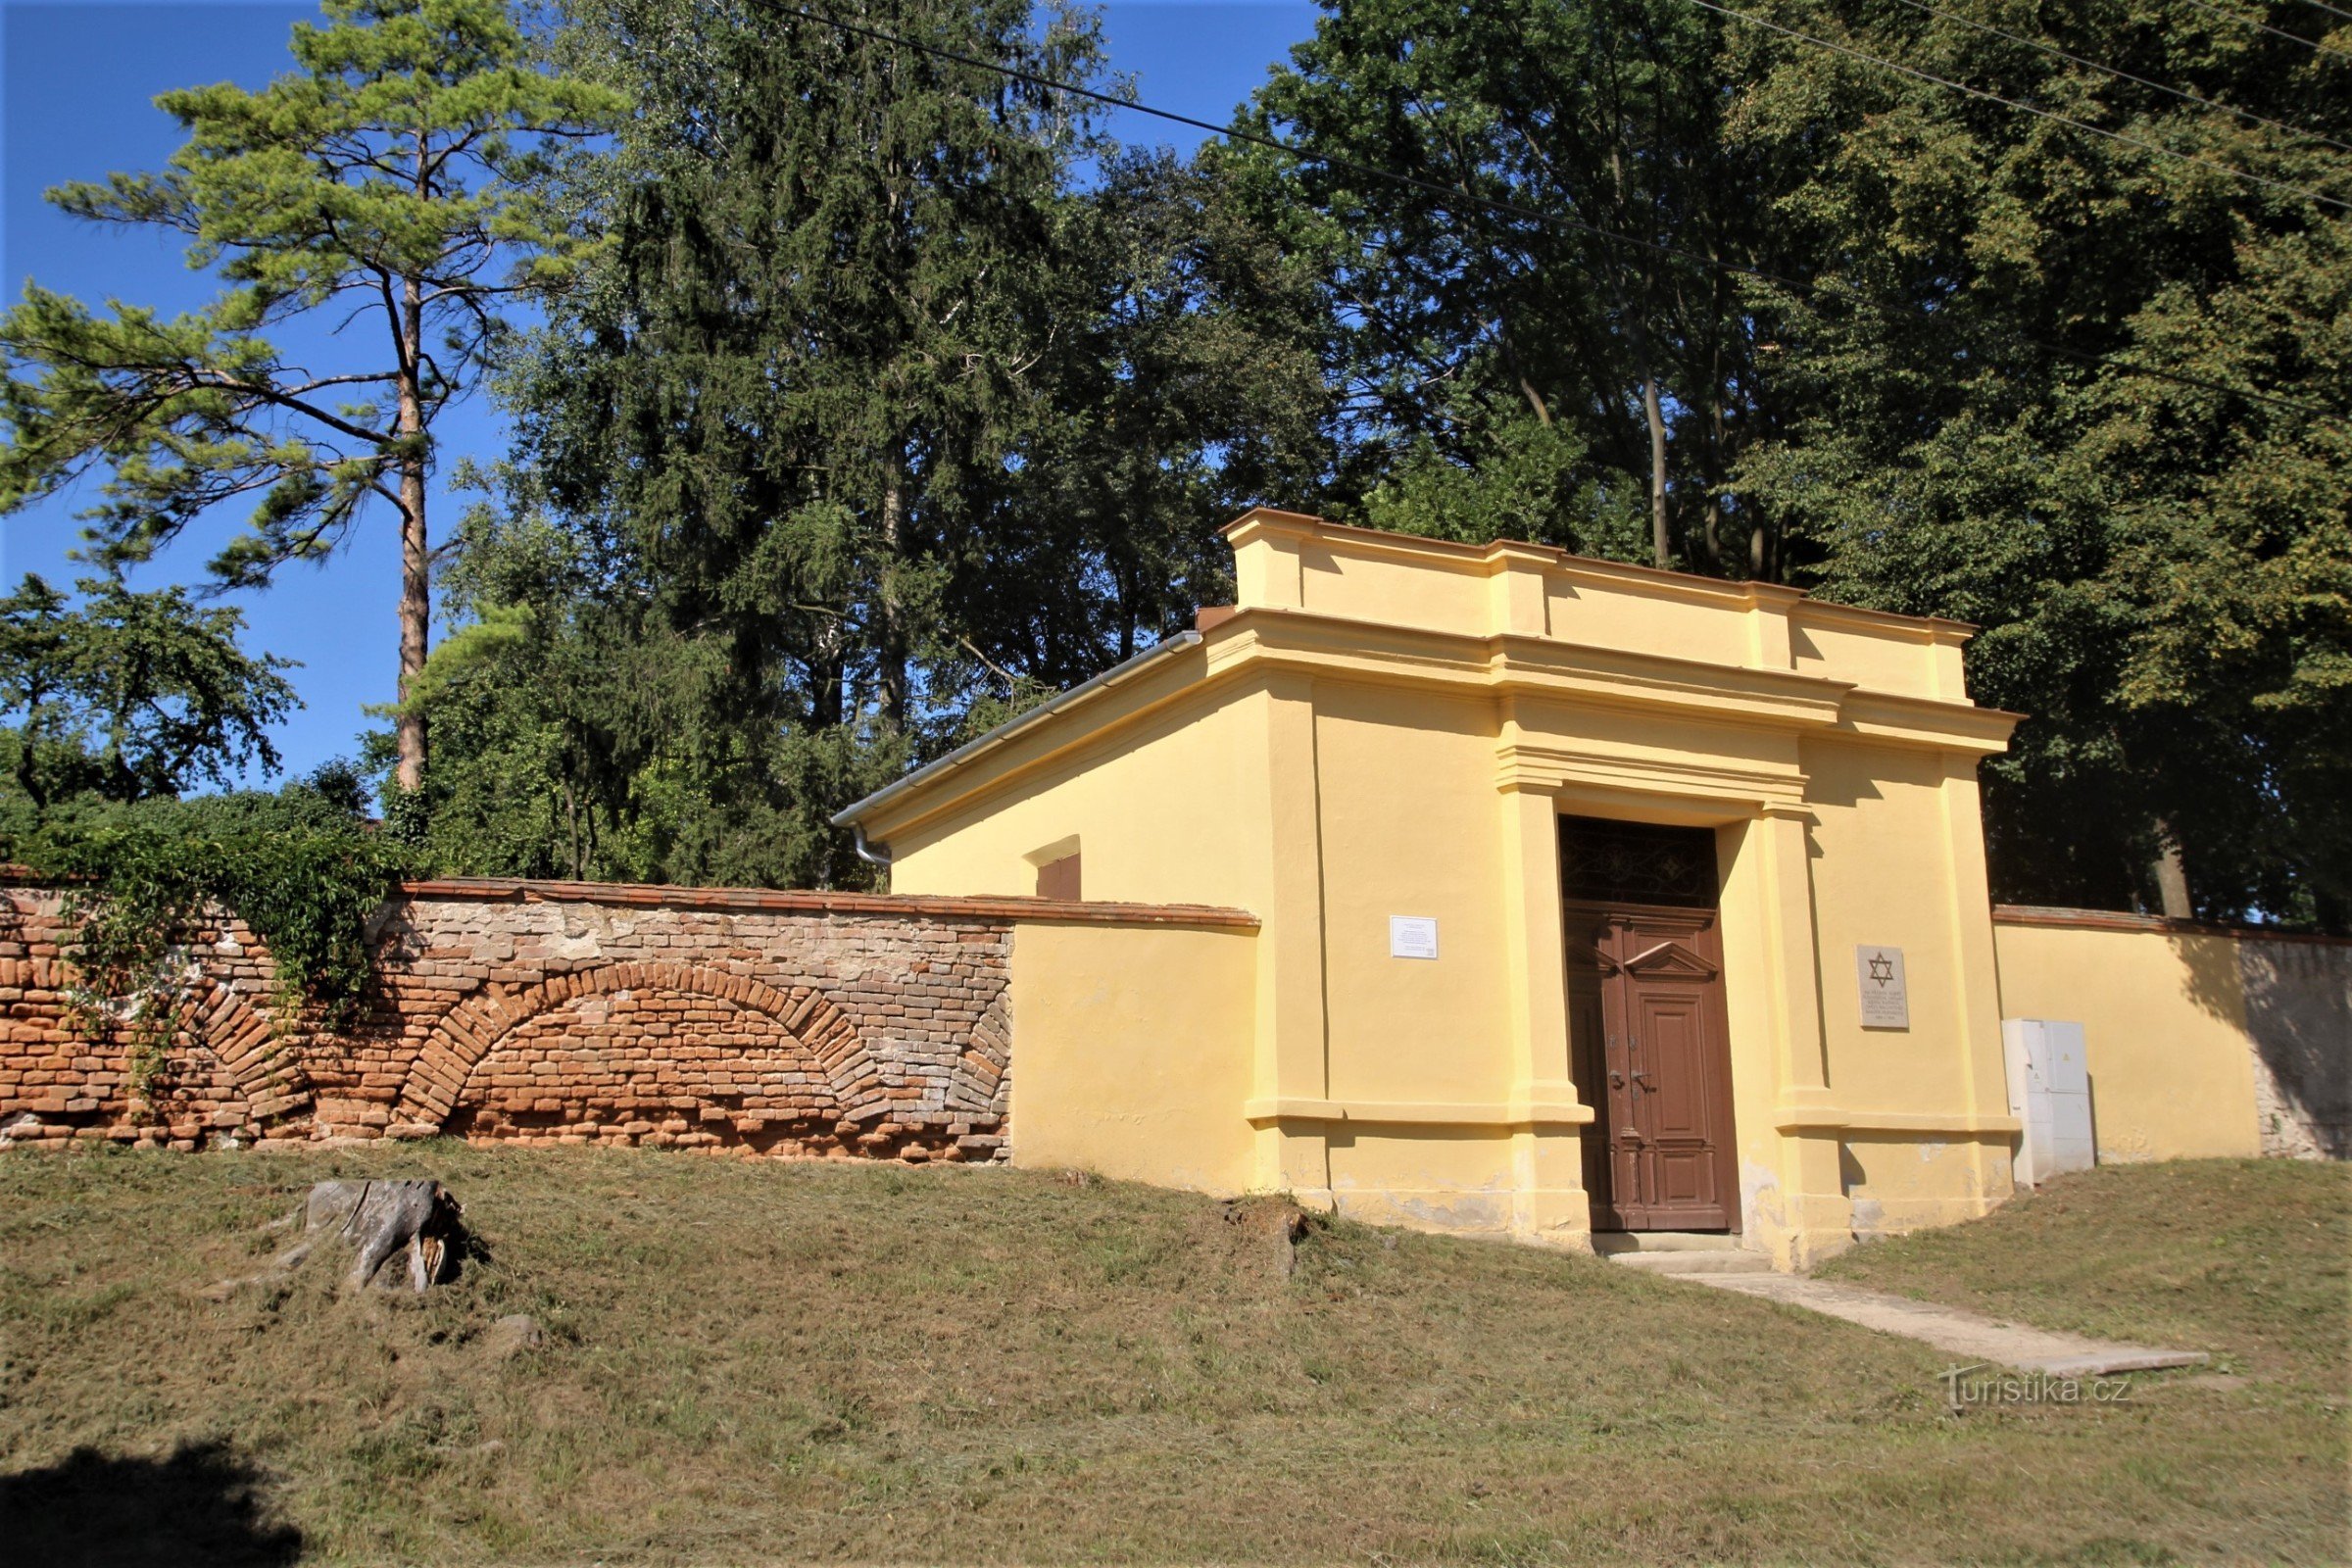 Bučovice - judisk kyrkogård